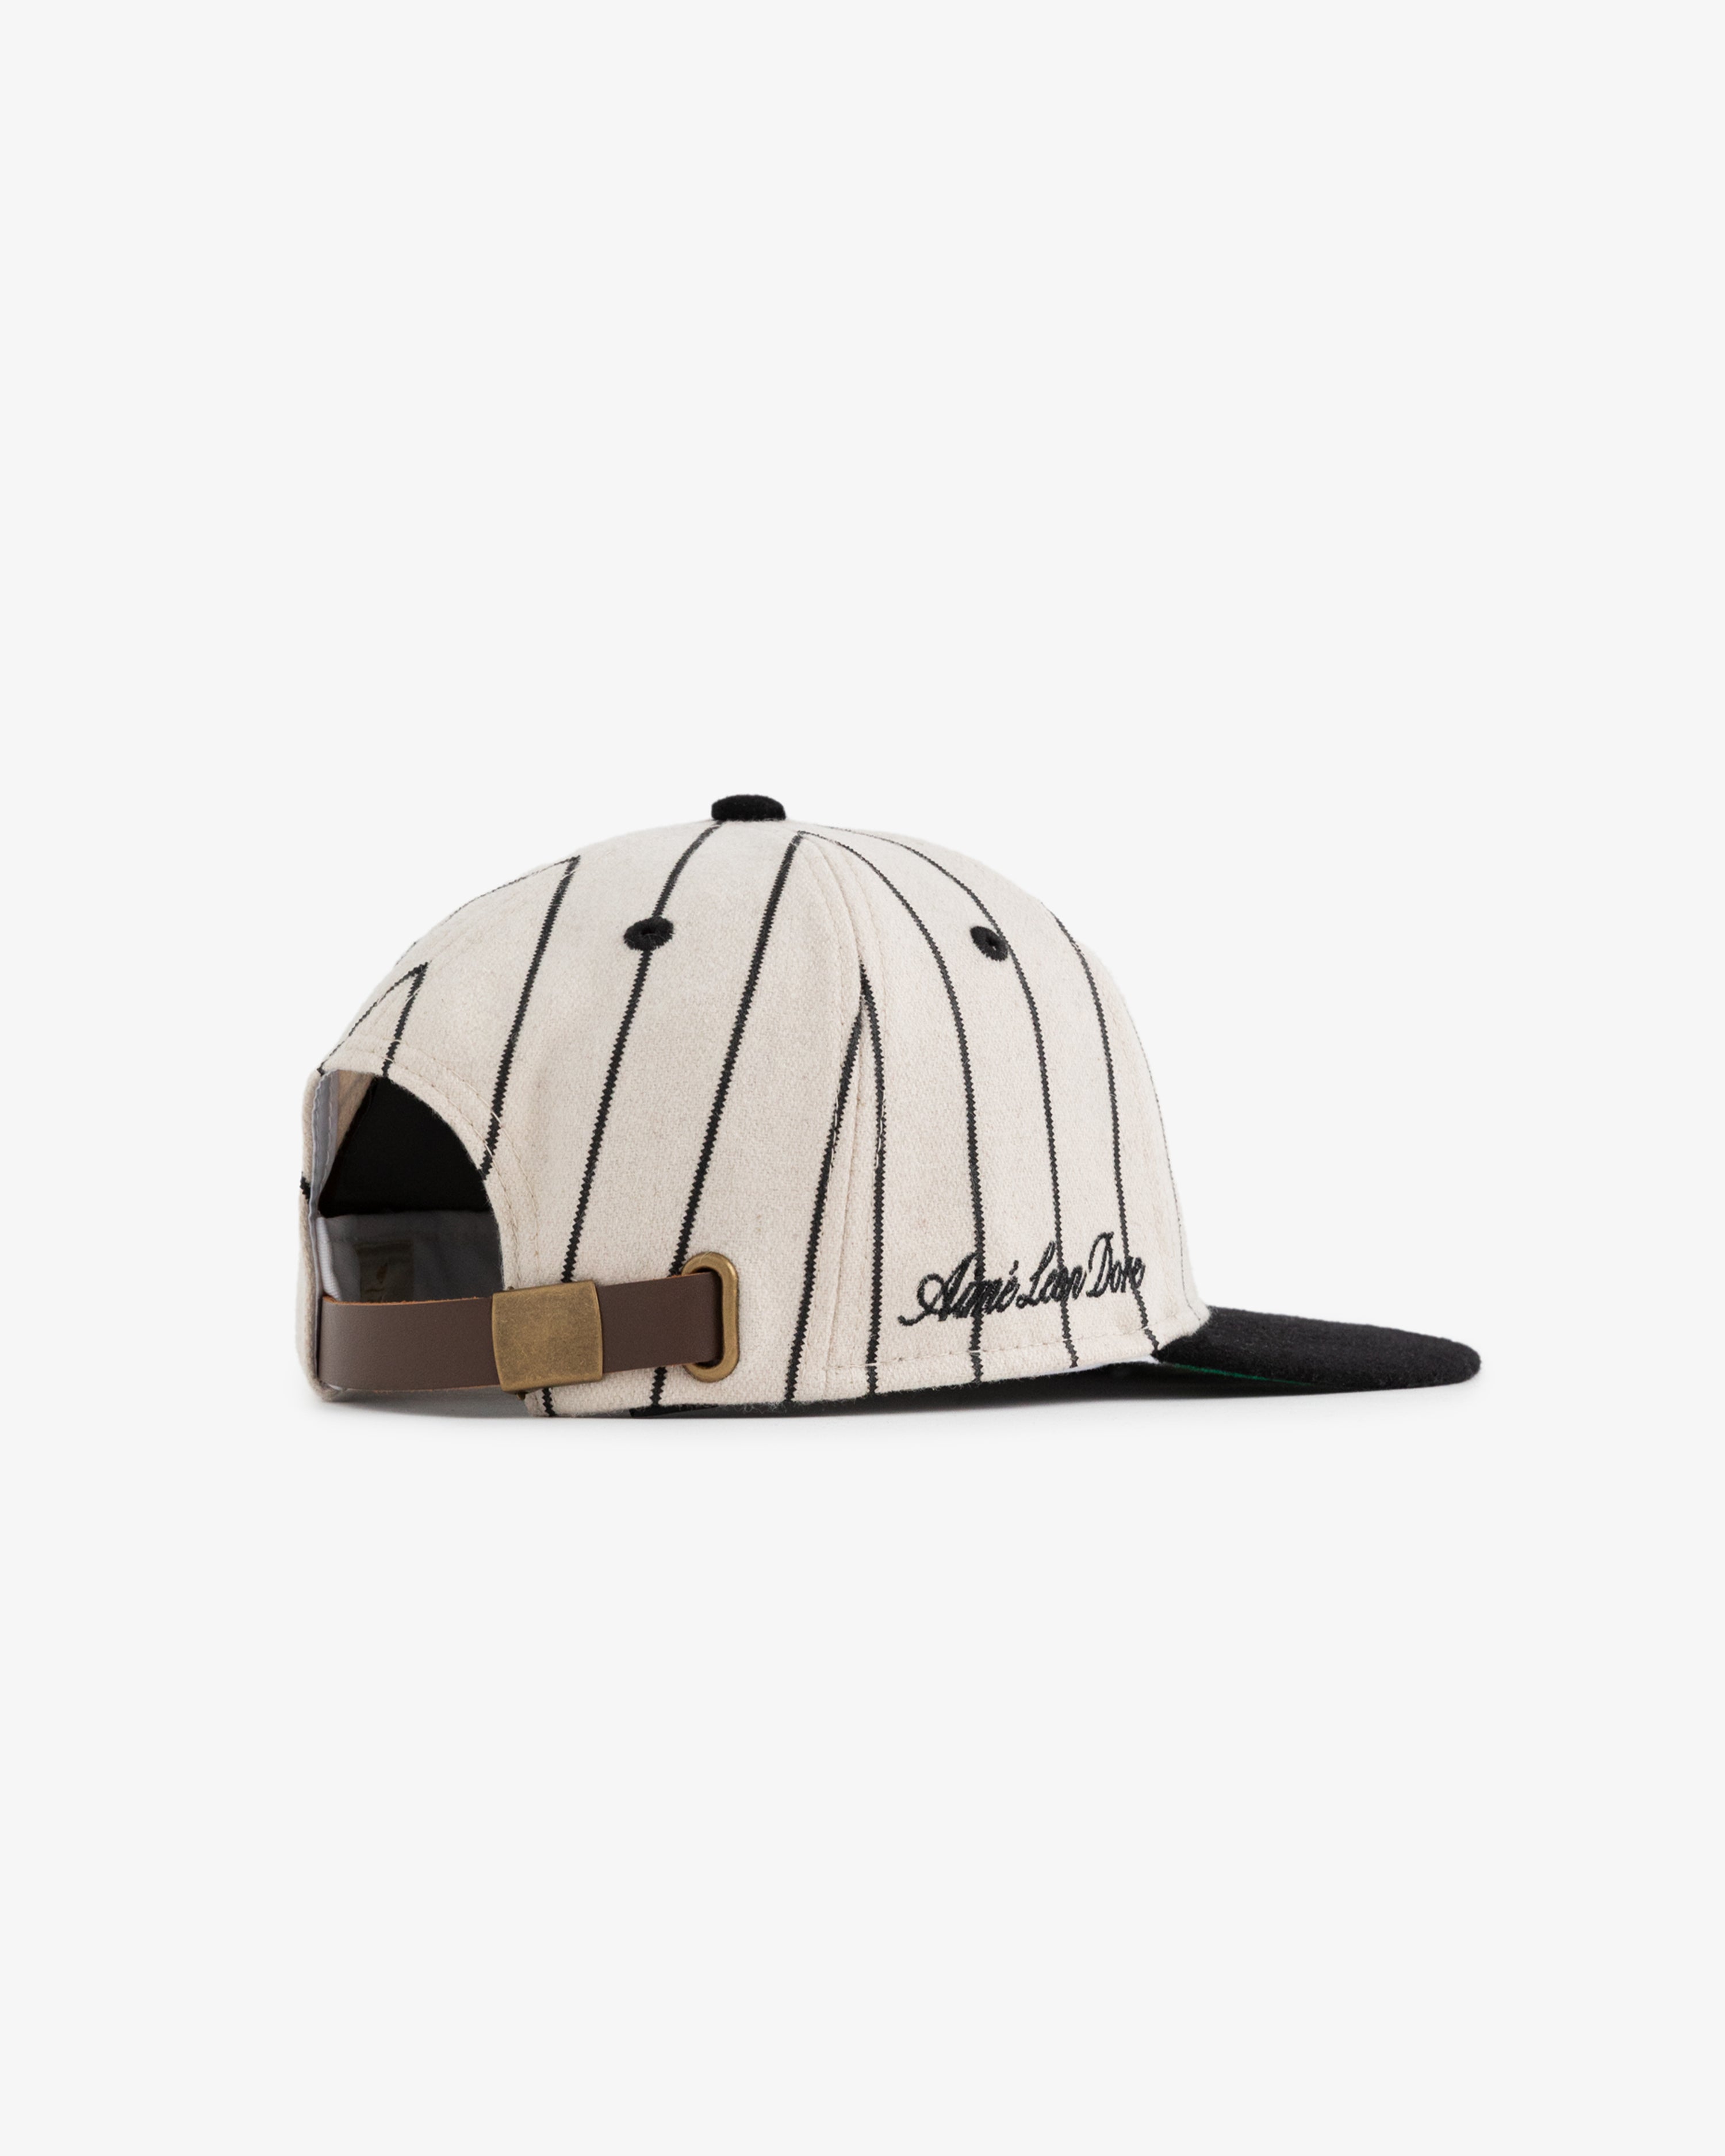 ALD / New Era Wool Mets Hat